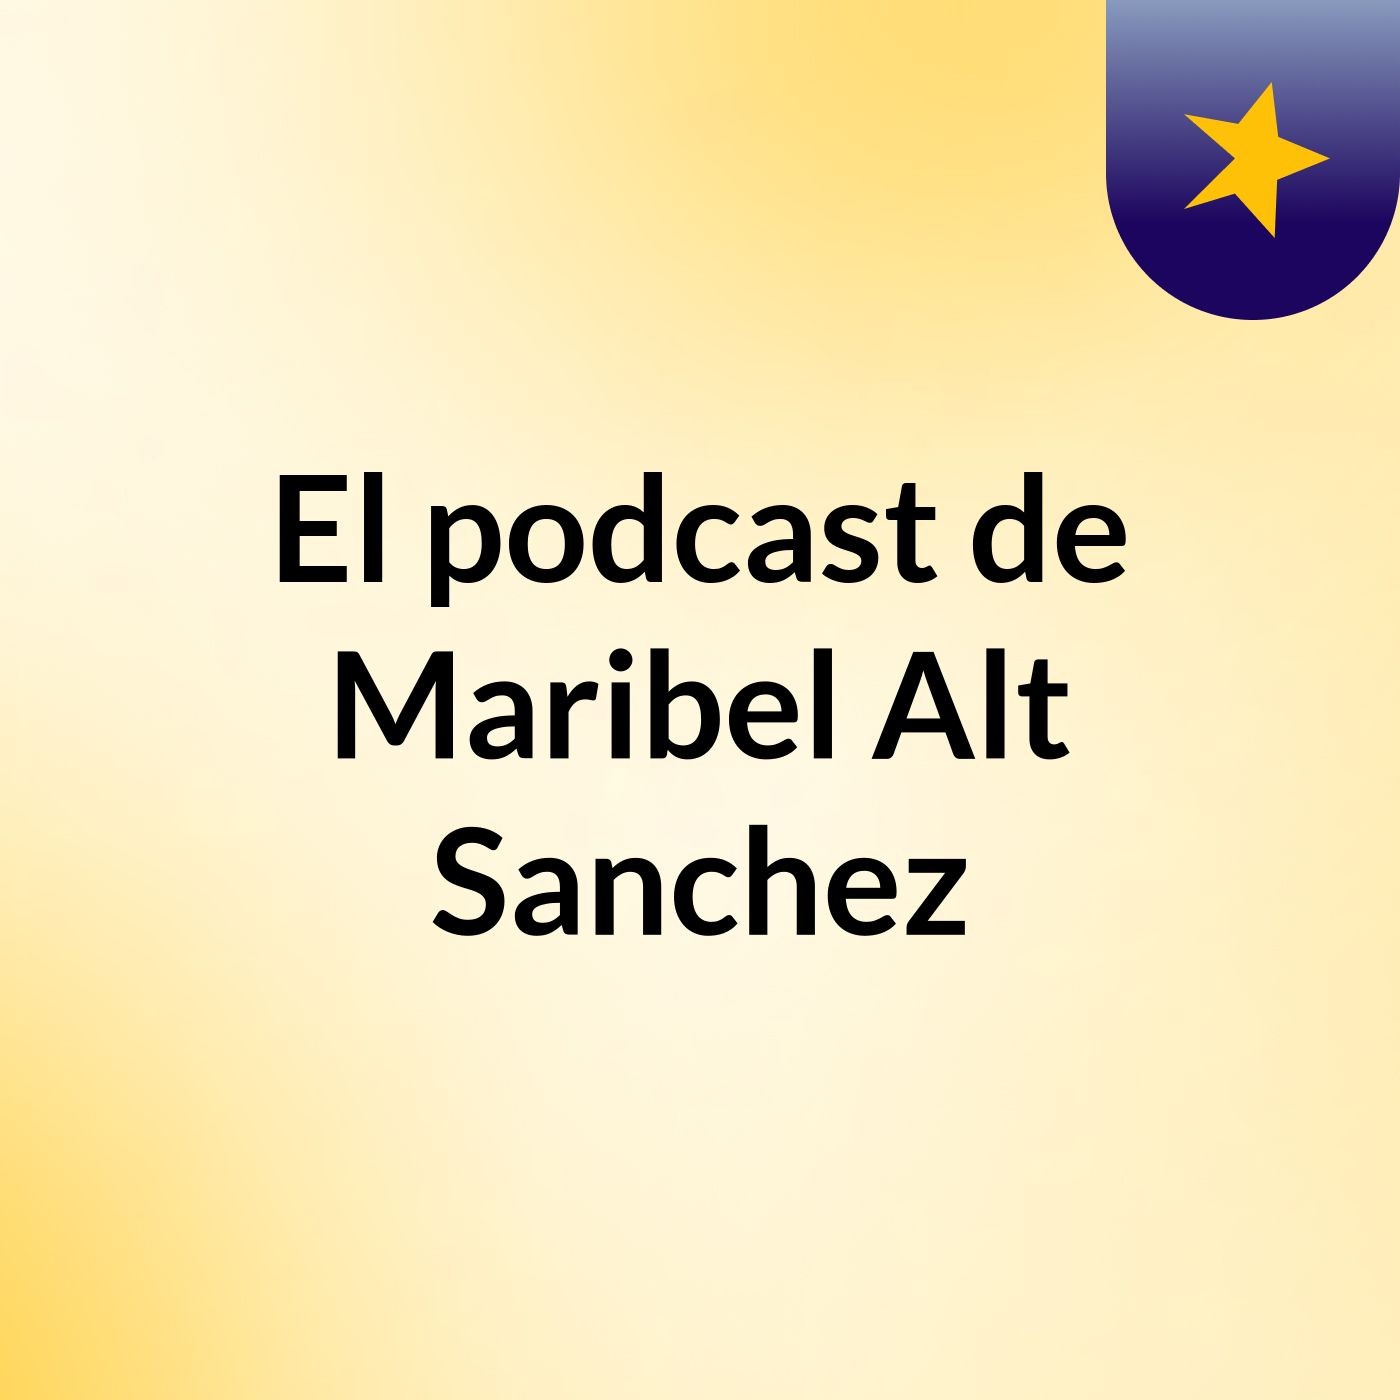 El podcast de Maribel Alt Sanchez